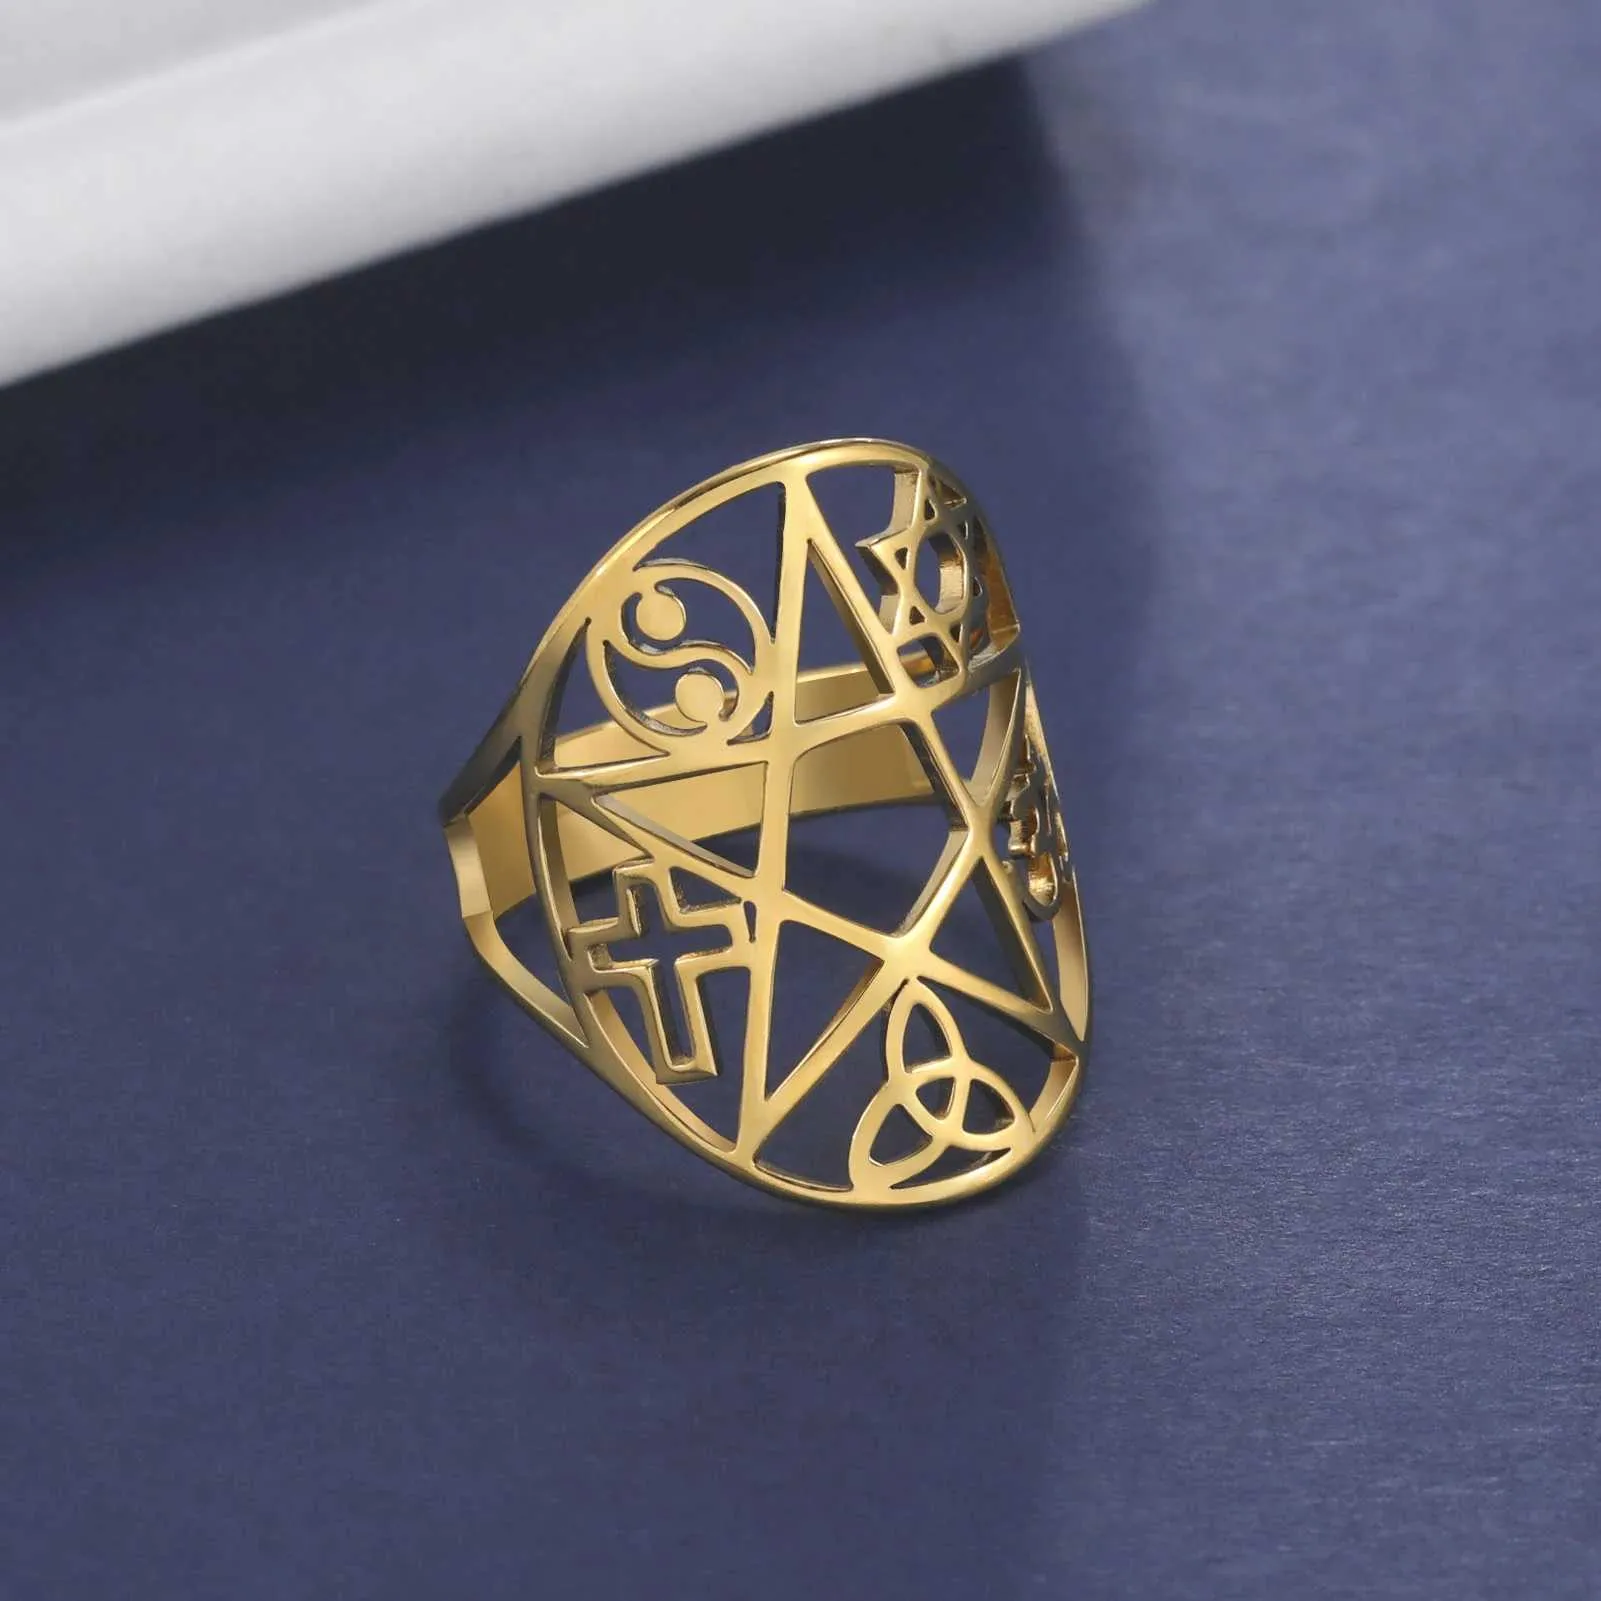 Eheringe Skyrim Amulett Pentakel Pentagramm Ring Edelstahl Triquetra Cross Star von David Yin Yang Om Symbol Schmuck für Frauen Männer Männer